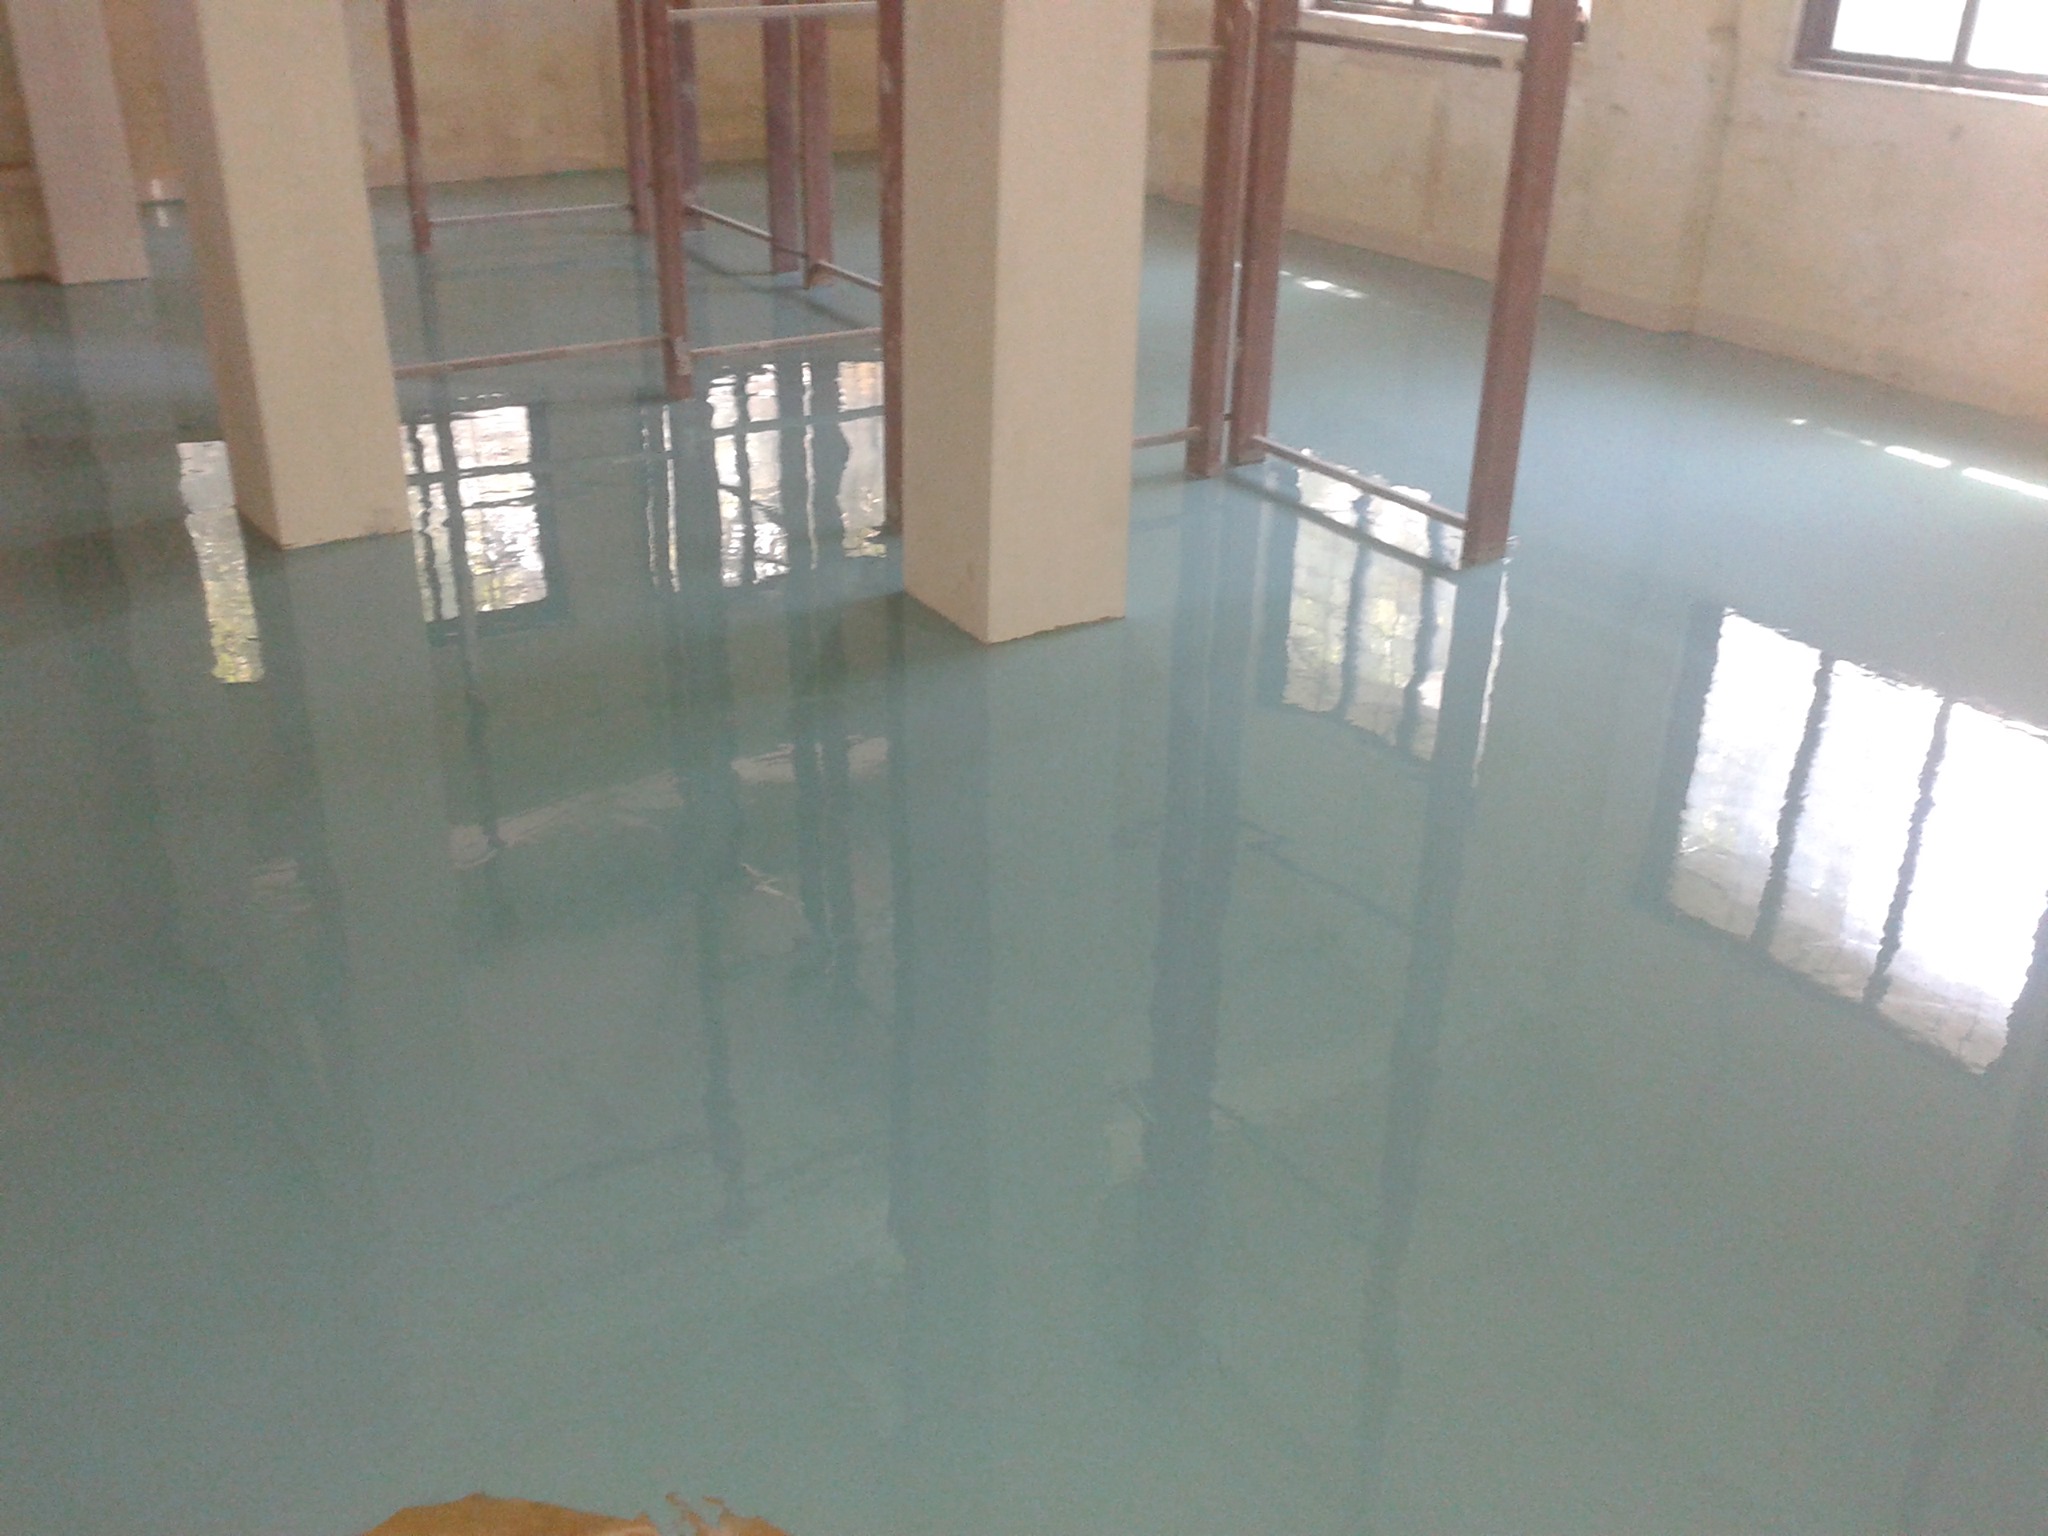 PU floor coating